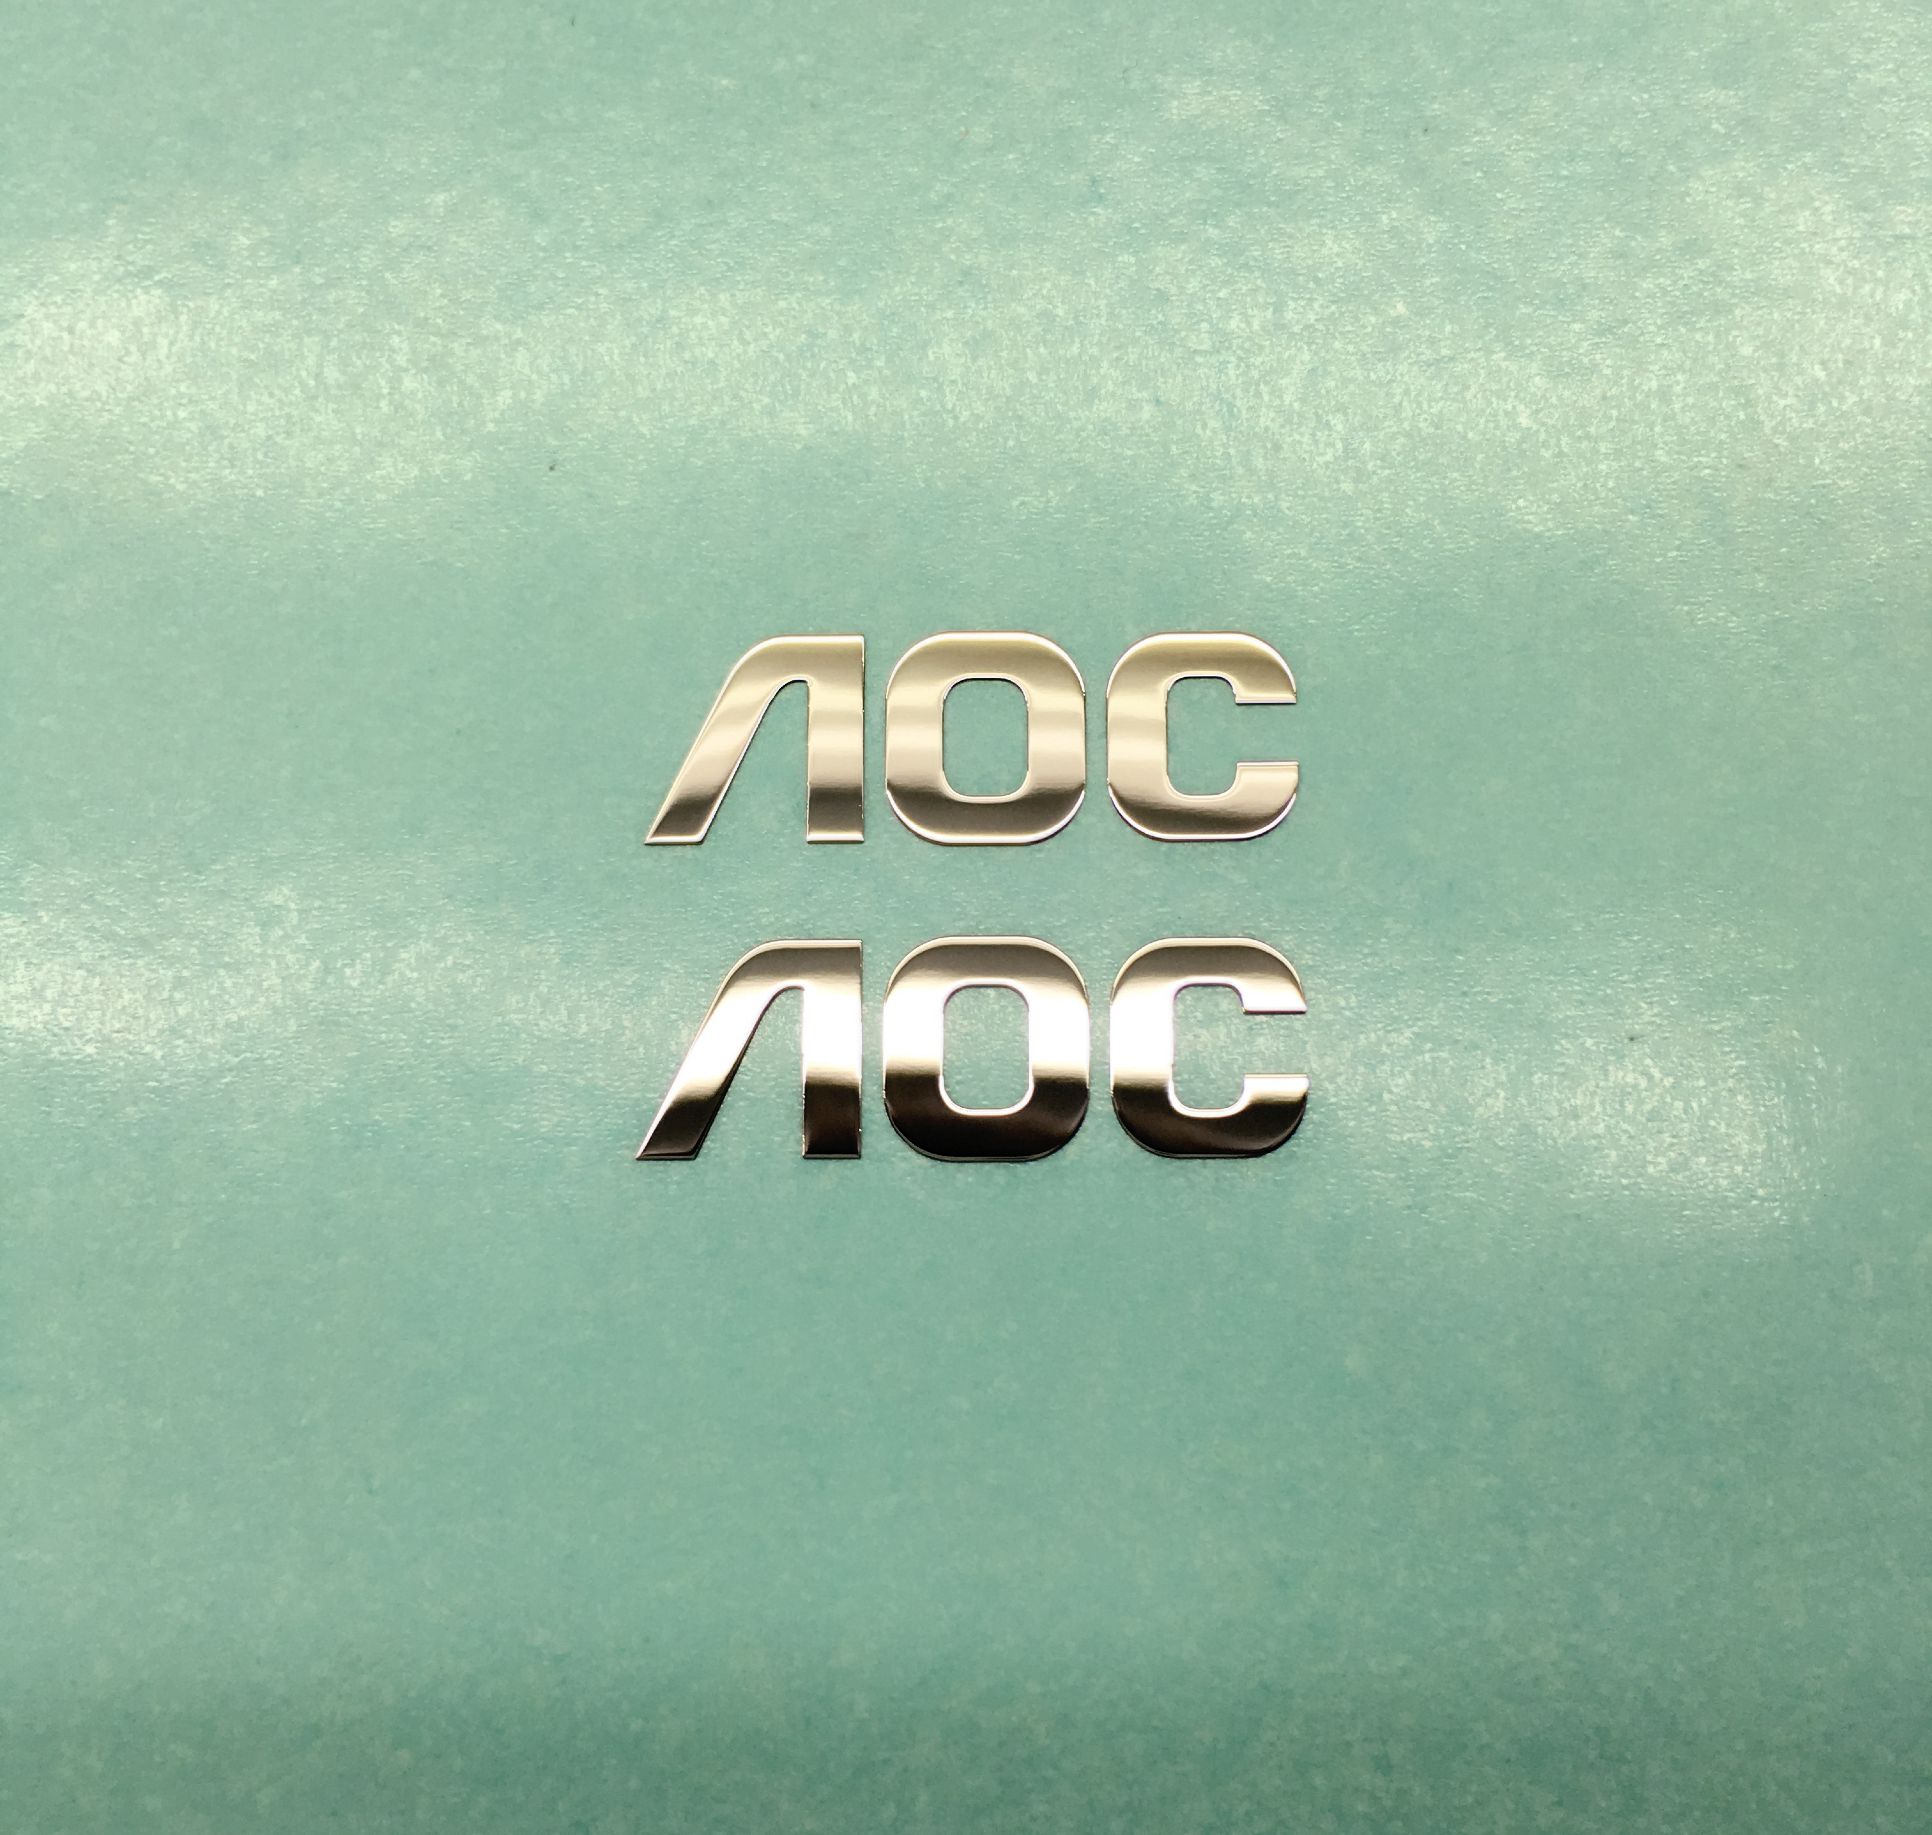 电镀薄标、金属镍片LOGO、不干胶金属镍商标贴